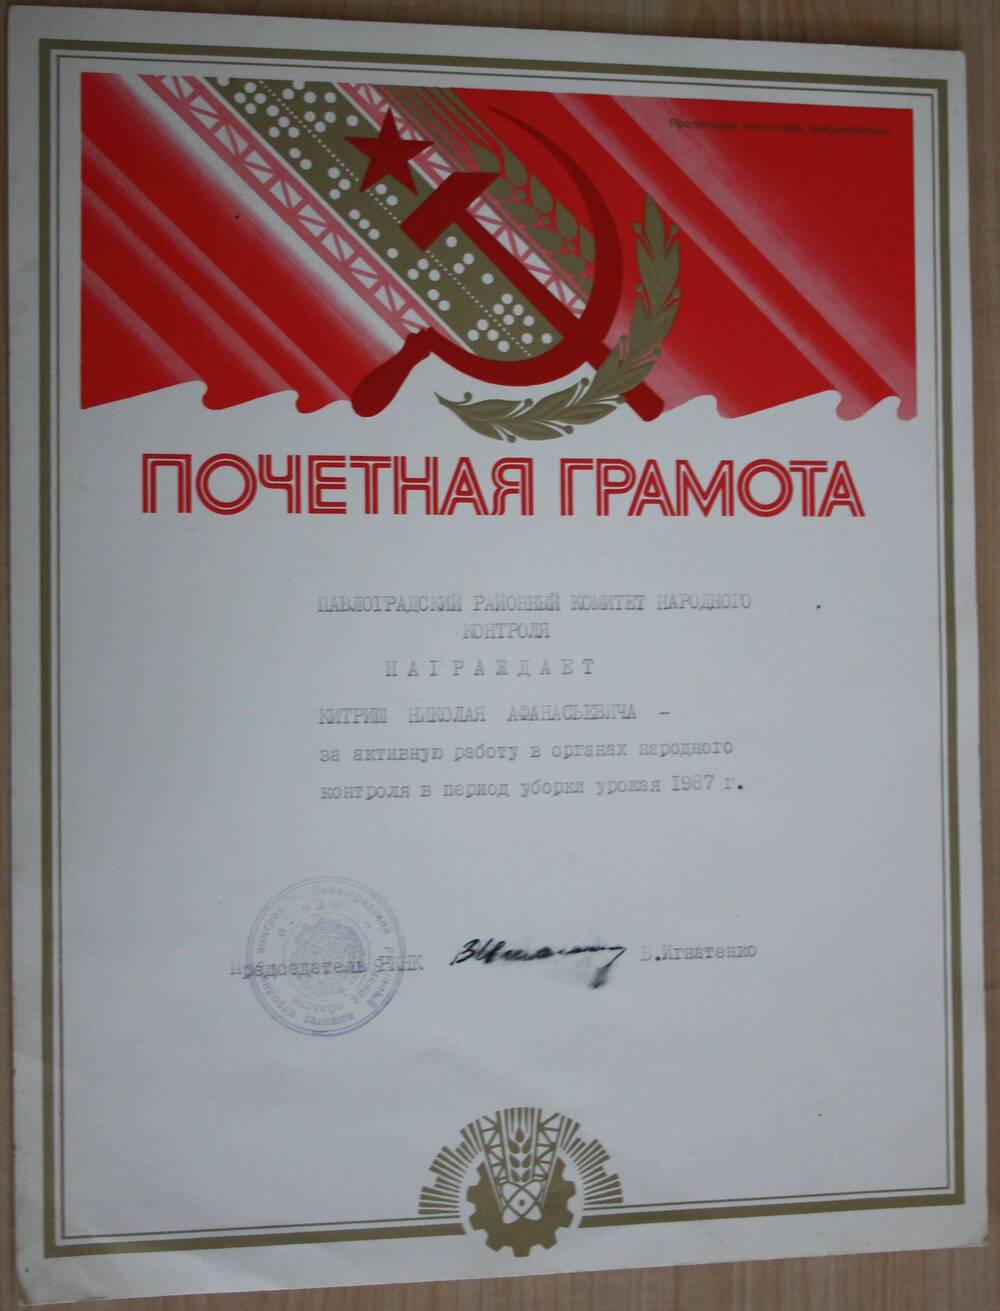 Почетная грамота Китришу Н.А. за активную работу в органах народного контроля в период уборки урожая 1987 г.